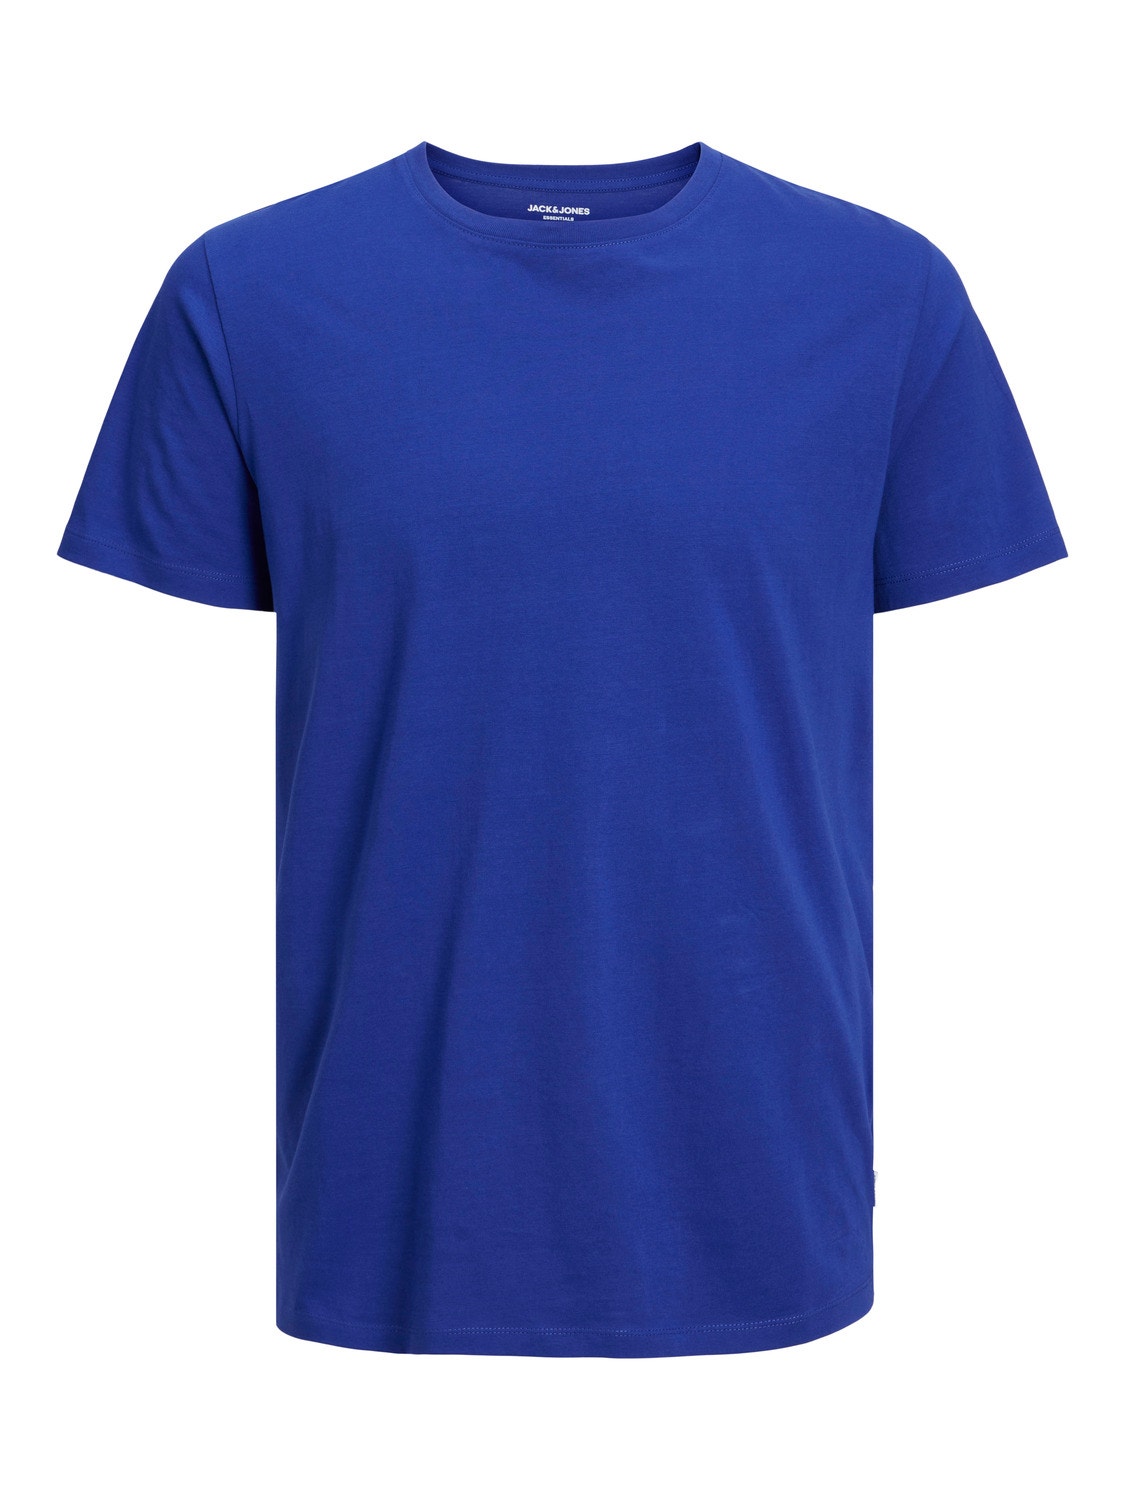 Jack & Jones T-shirt Liso Decote Redondo -Bluing - 12156101